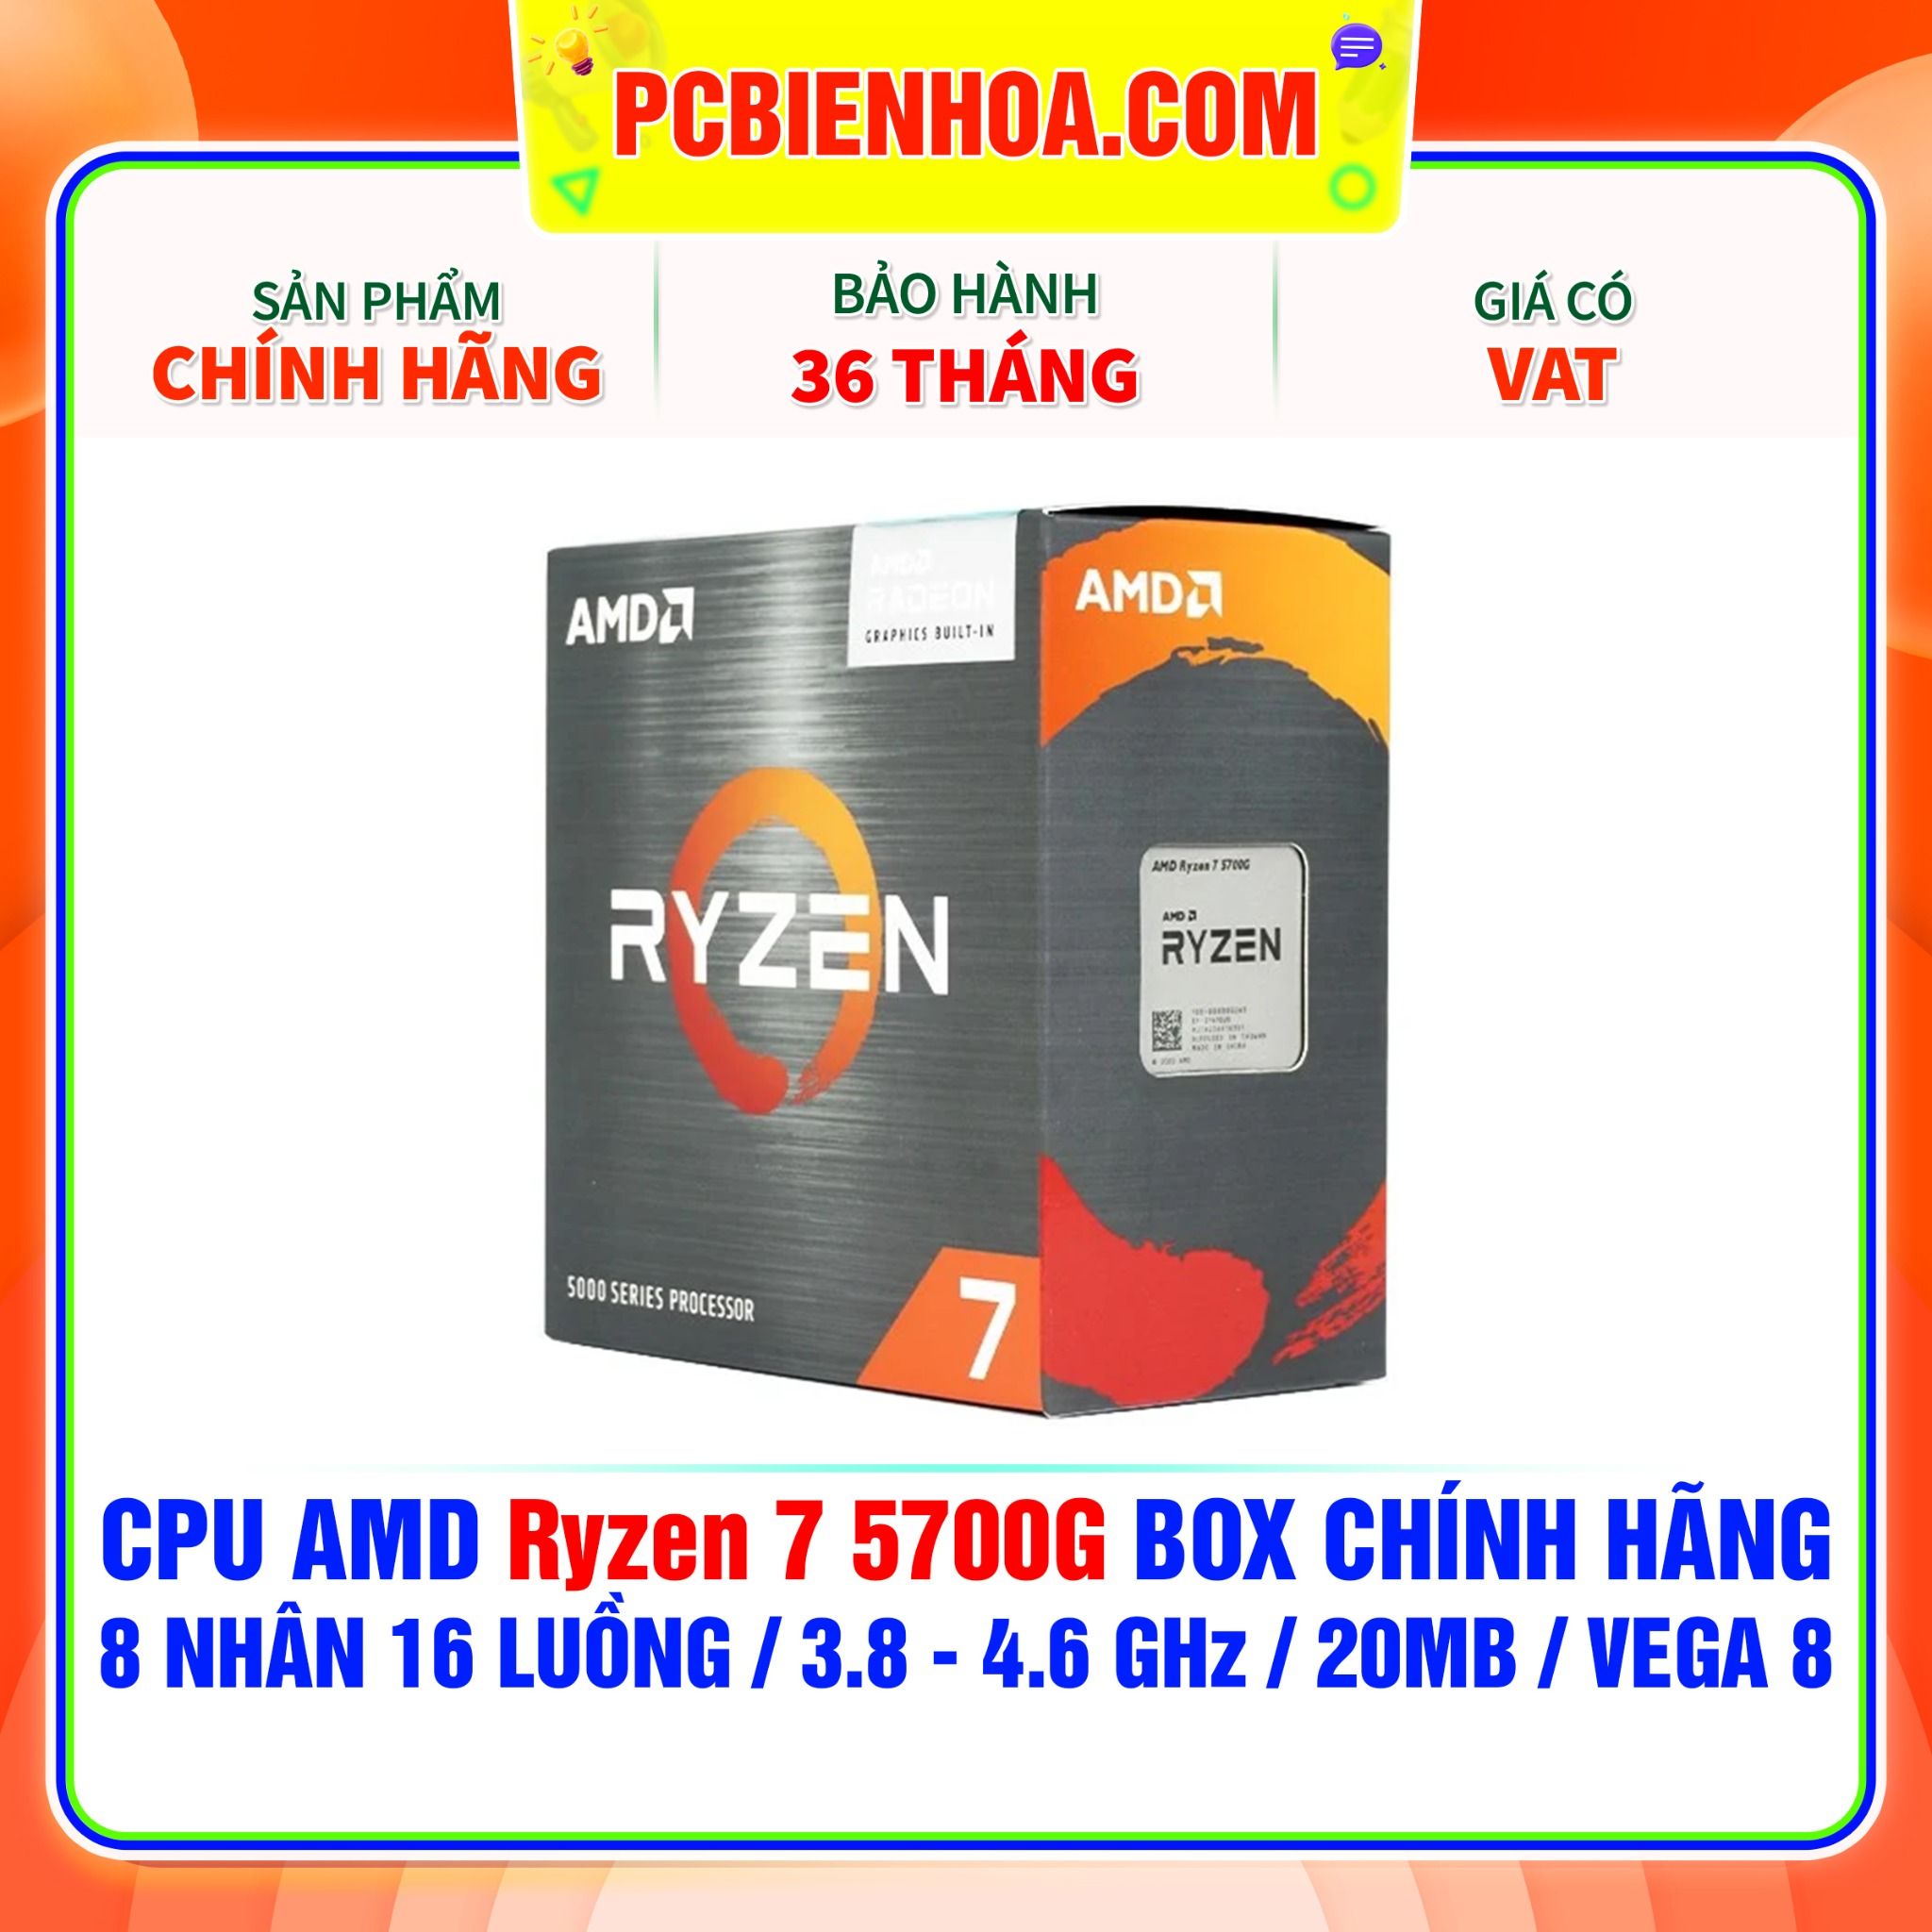  CPU AMD Ryzen 7 5700G BOX CHÍNH HÃNG ( 8 NHÂN 16 LUỒNG / 3.8 - 4.6 GHz / 20MB / VEGA 8 ) 